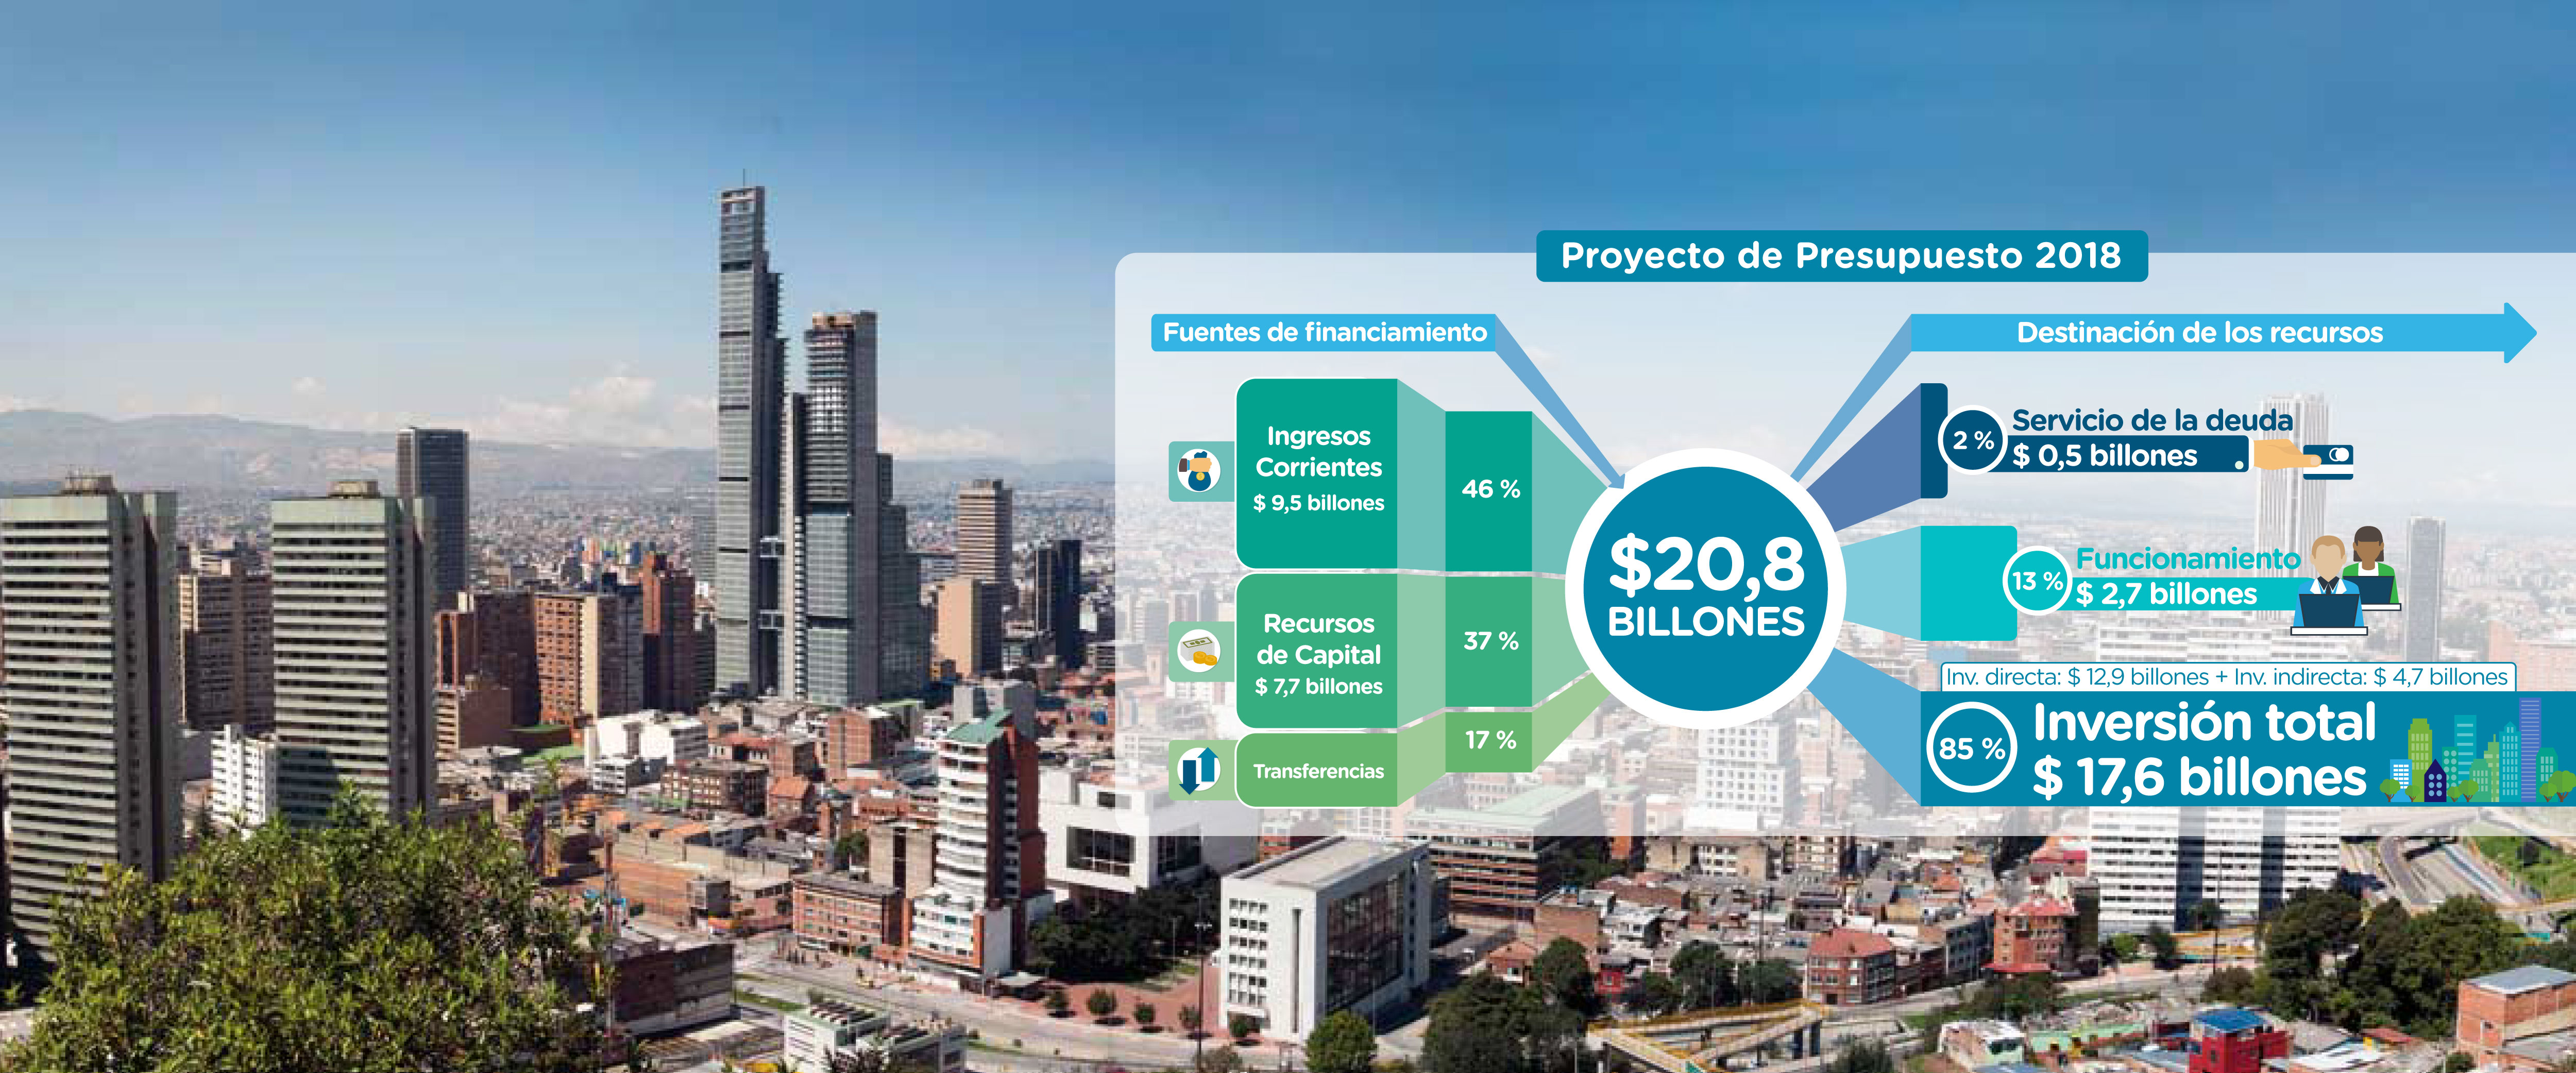 Presupuesto de Bogotá será de $ 20,8 billones para 2018